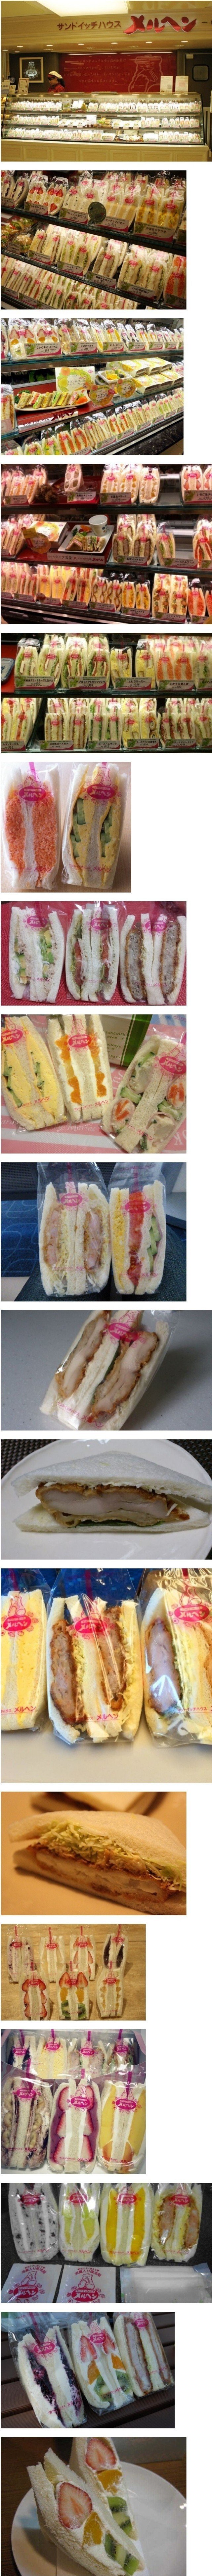 일본의 샌드위치 전문점 클라스